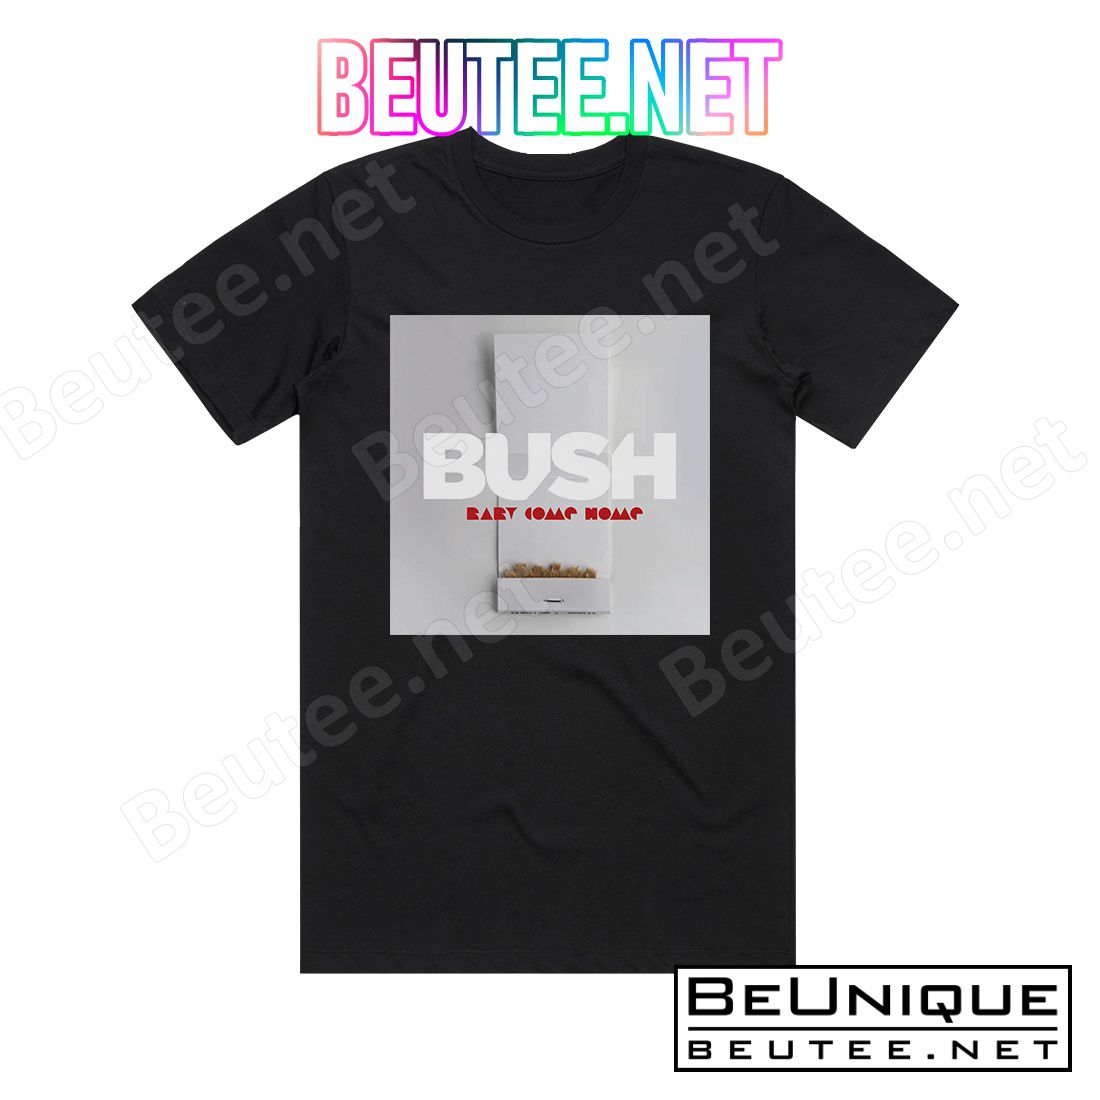 Bush Baby Come Home Album Cover T-Shirt